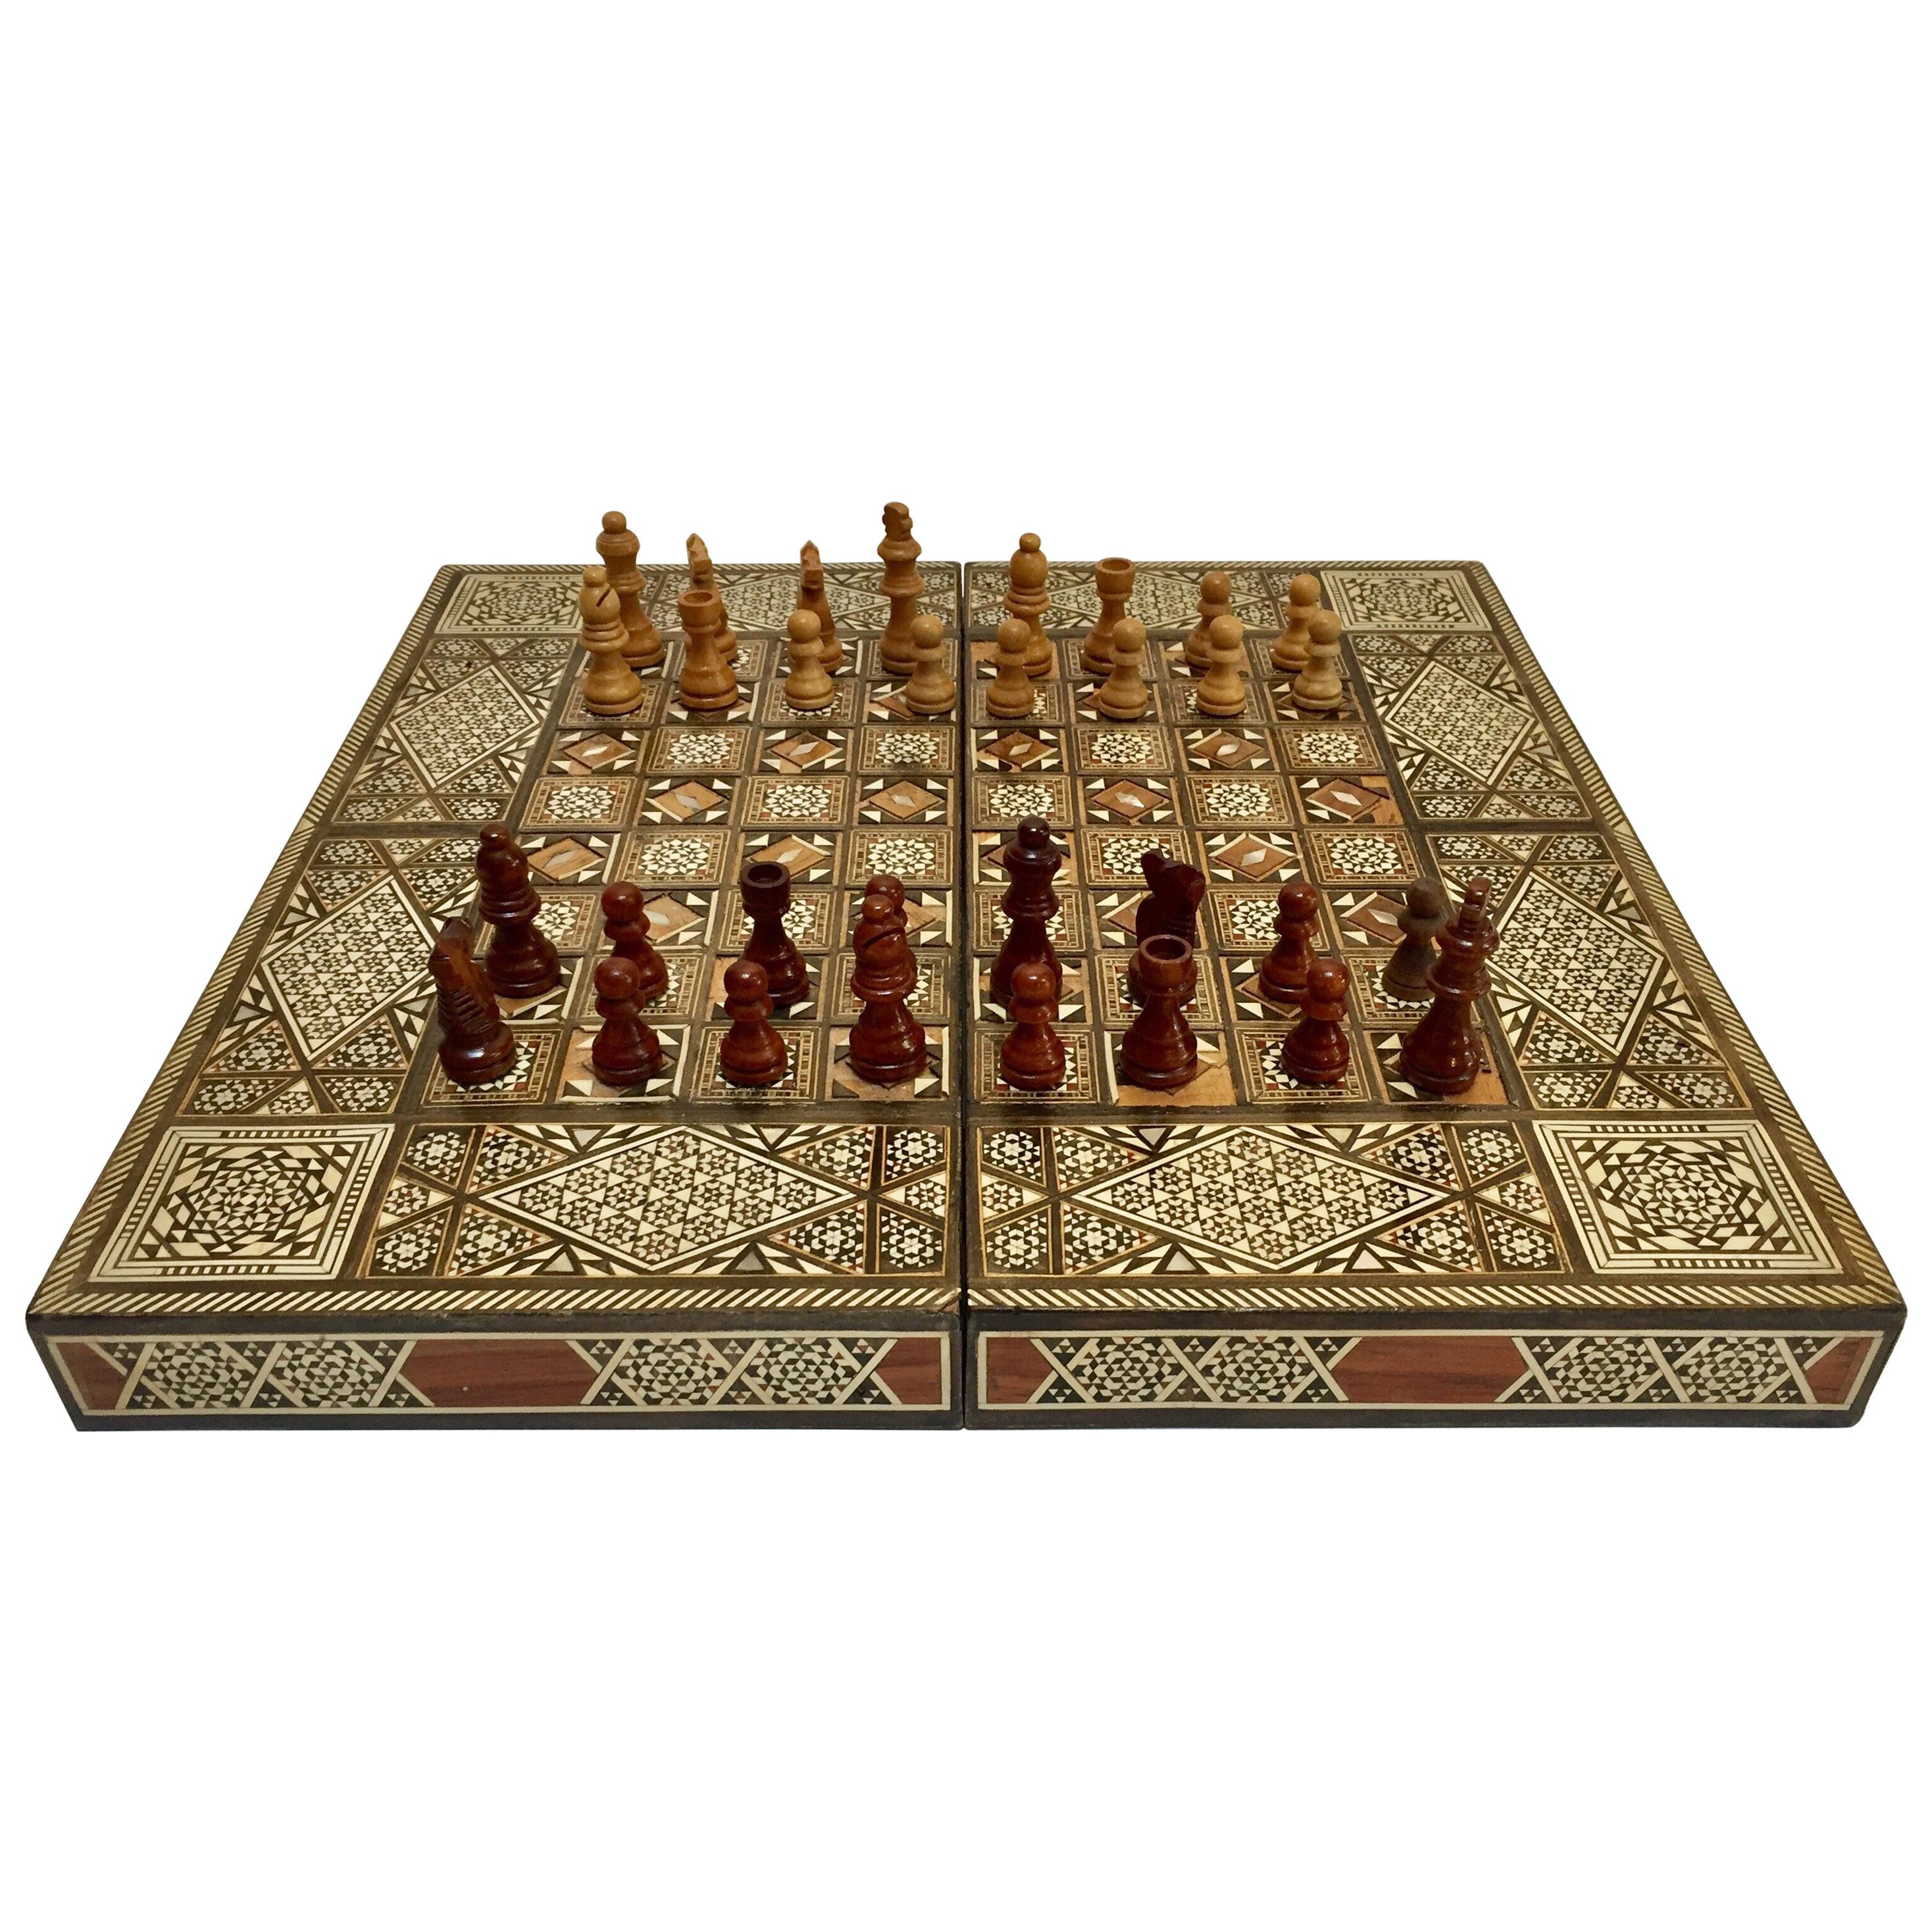 Vieux grand jeu complet de backgammon et d'echecs en mosaique incrustee syrienne